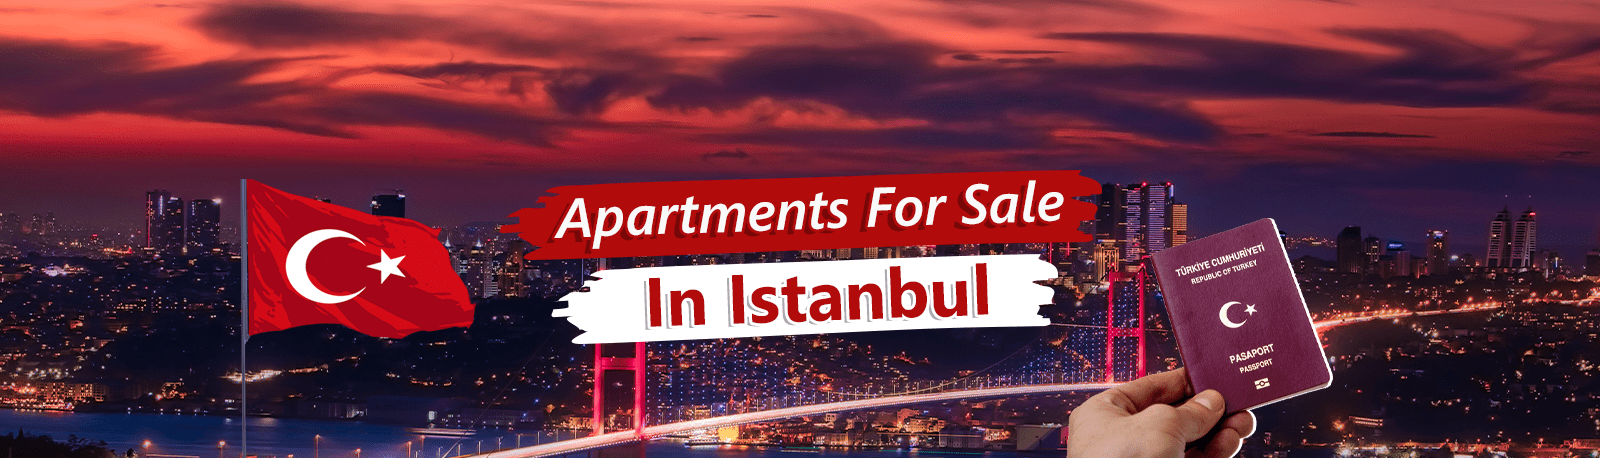 آپارتمان با اقساط در استانبول